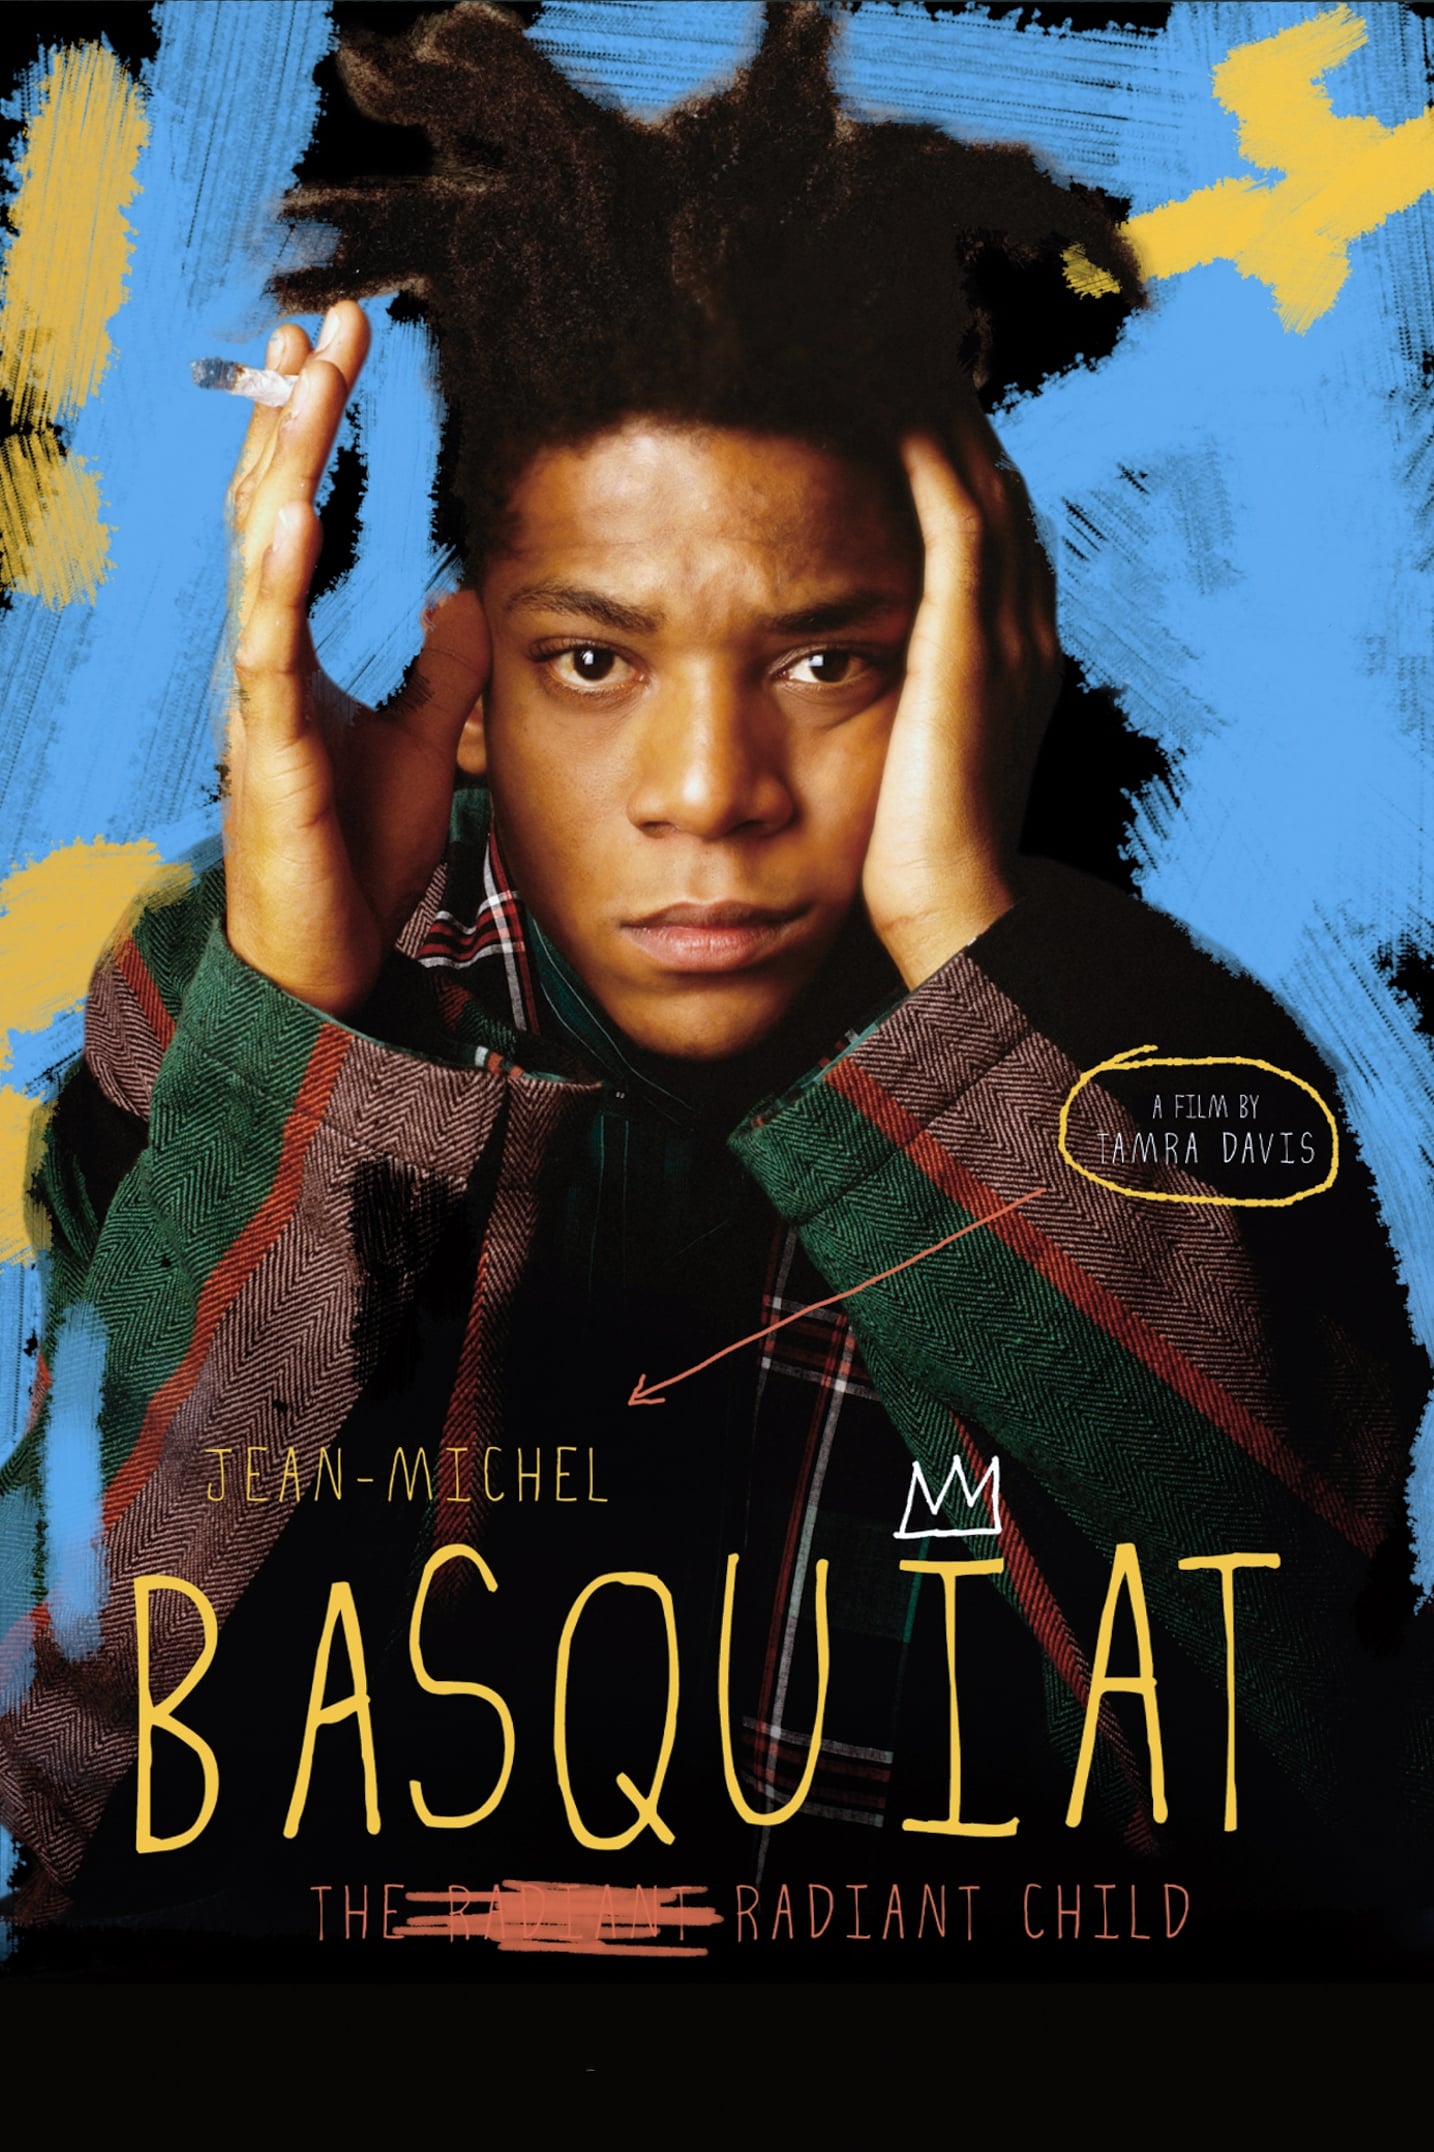 Jean-Michel Basquiat : The Radiant Child sur annuaire telechargement